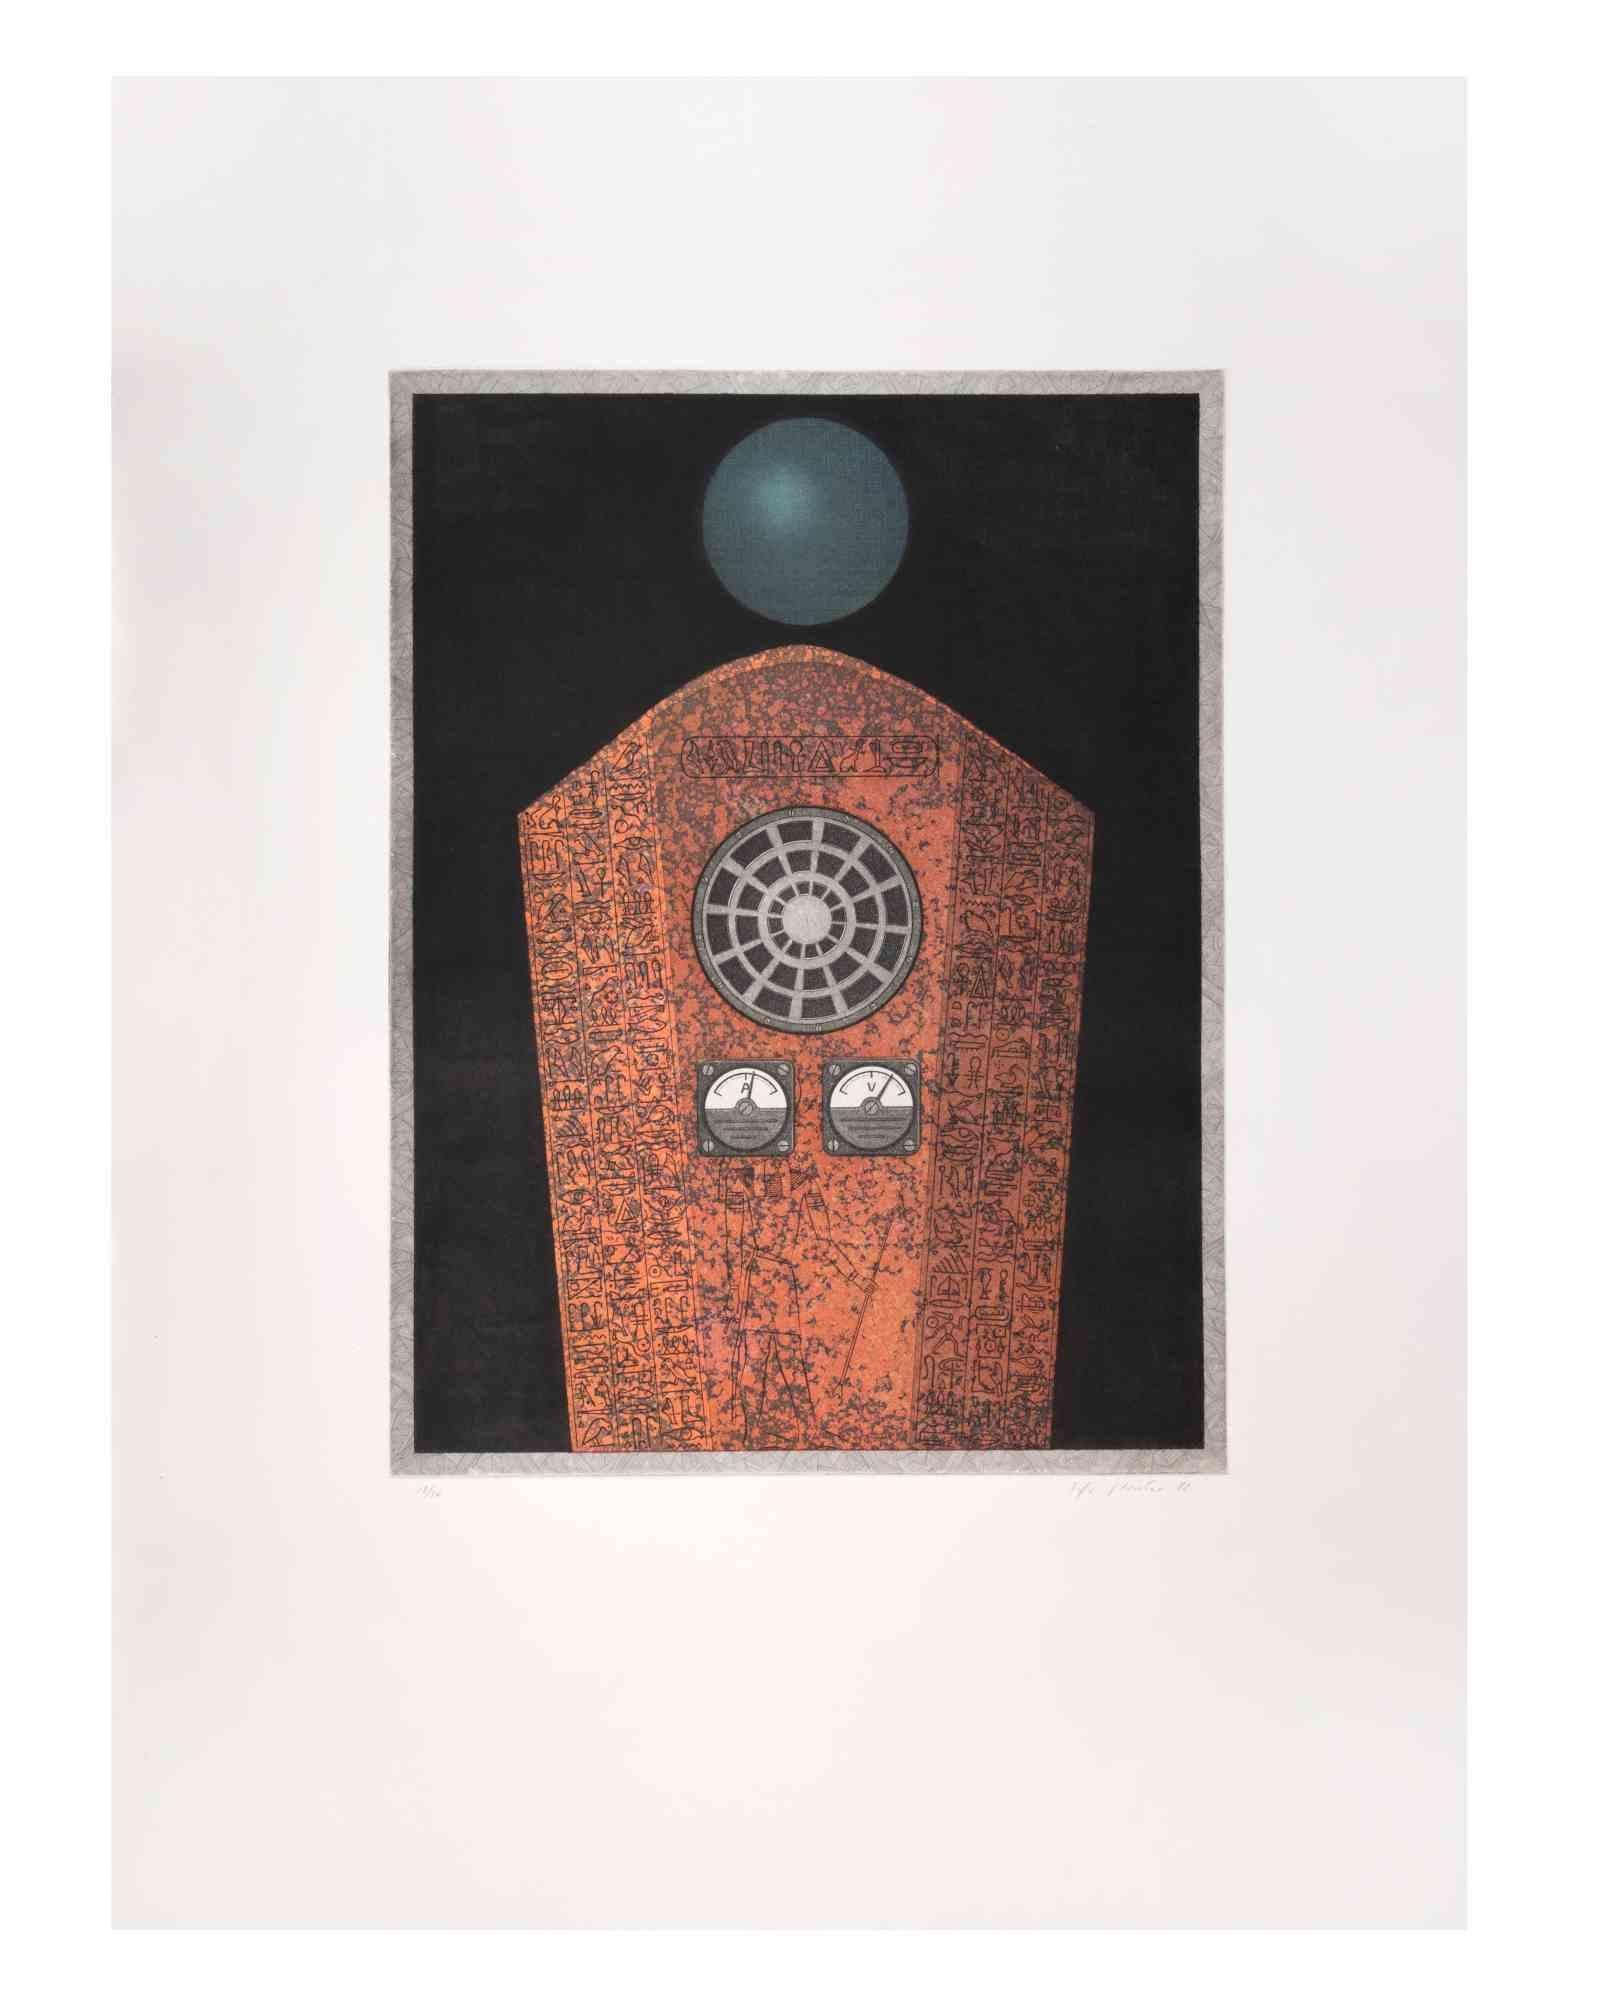 Radio Caire ist ein zeitgenössisches Kunstwerk des Künstlers Fifo Stricker aus dem Jahr 1982.

Gemischte farbige Aquatinta und Radierung. 

Vom Künstler am rechten unteren Rand handsigniert und datiert.

Am linken unteren Rand nummeriert. Auflage